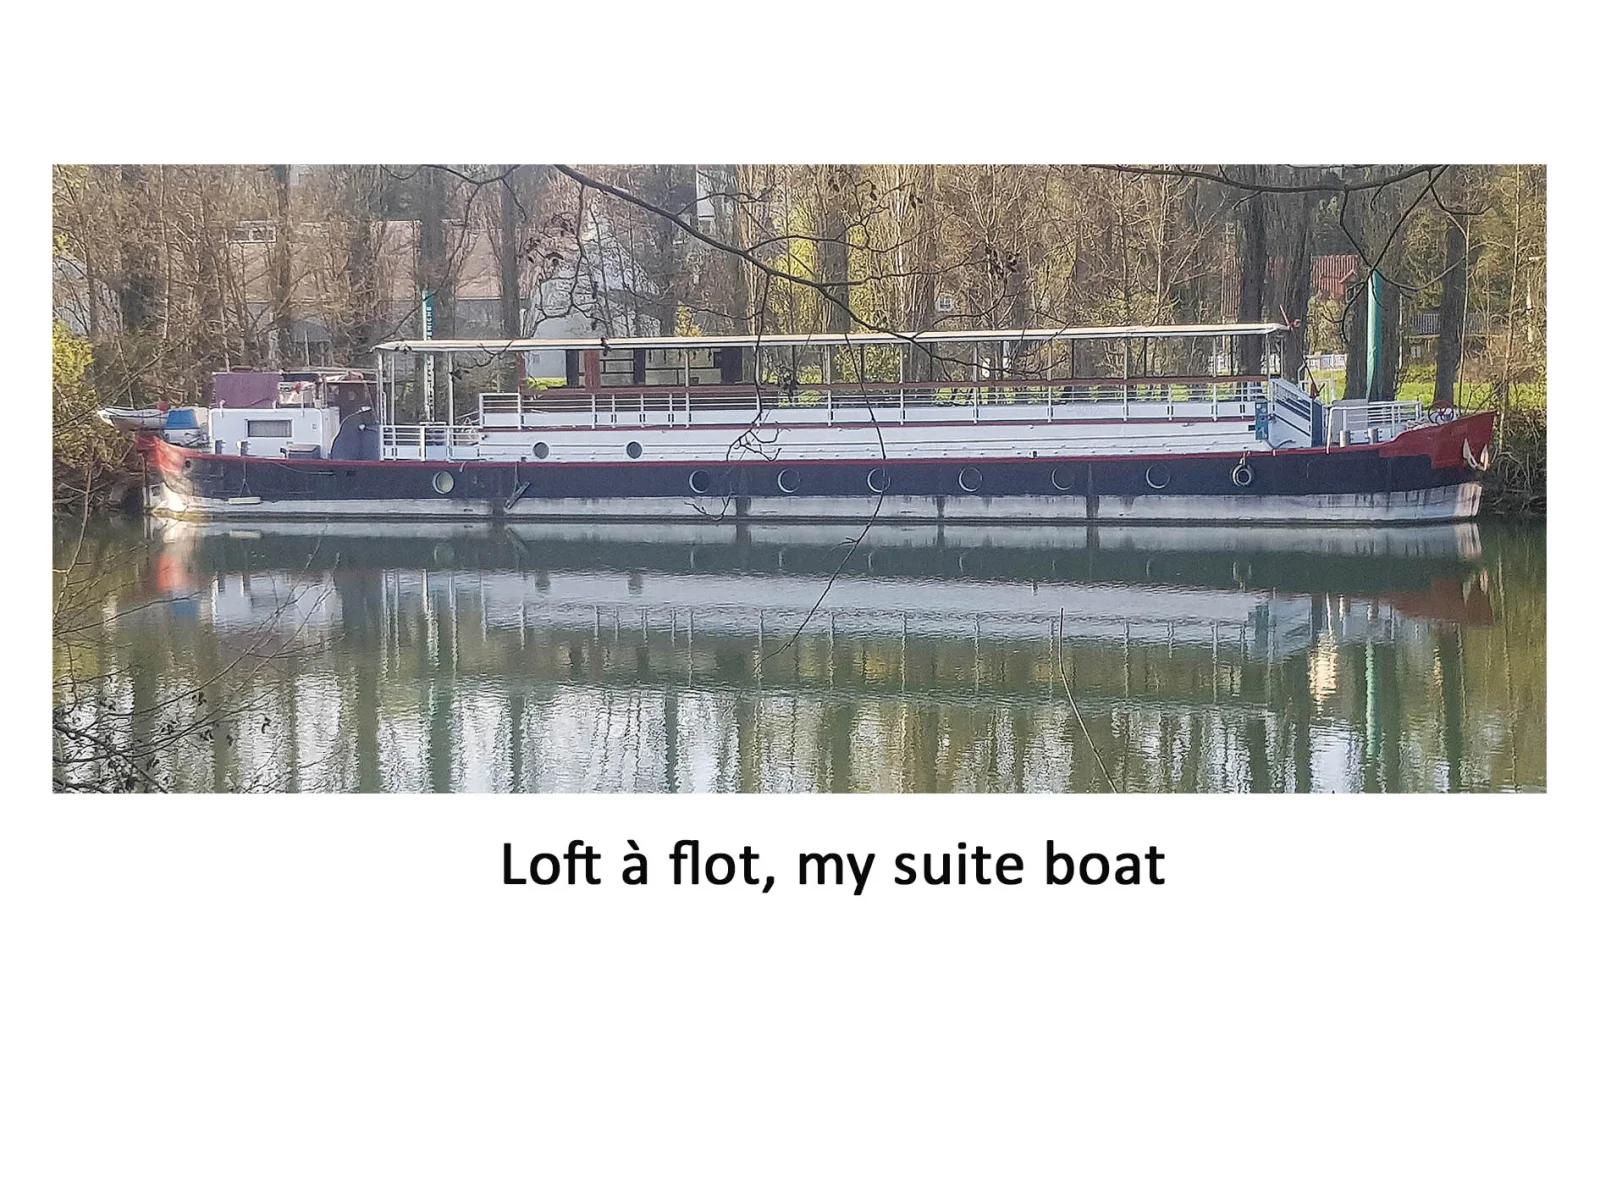 Kitchen dentro Peniche : Loft a flot, mi barco suite - 1